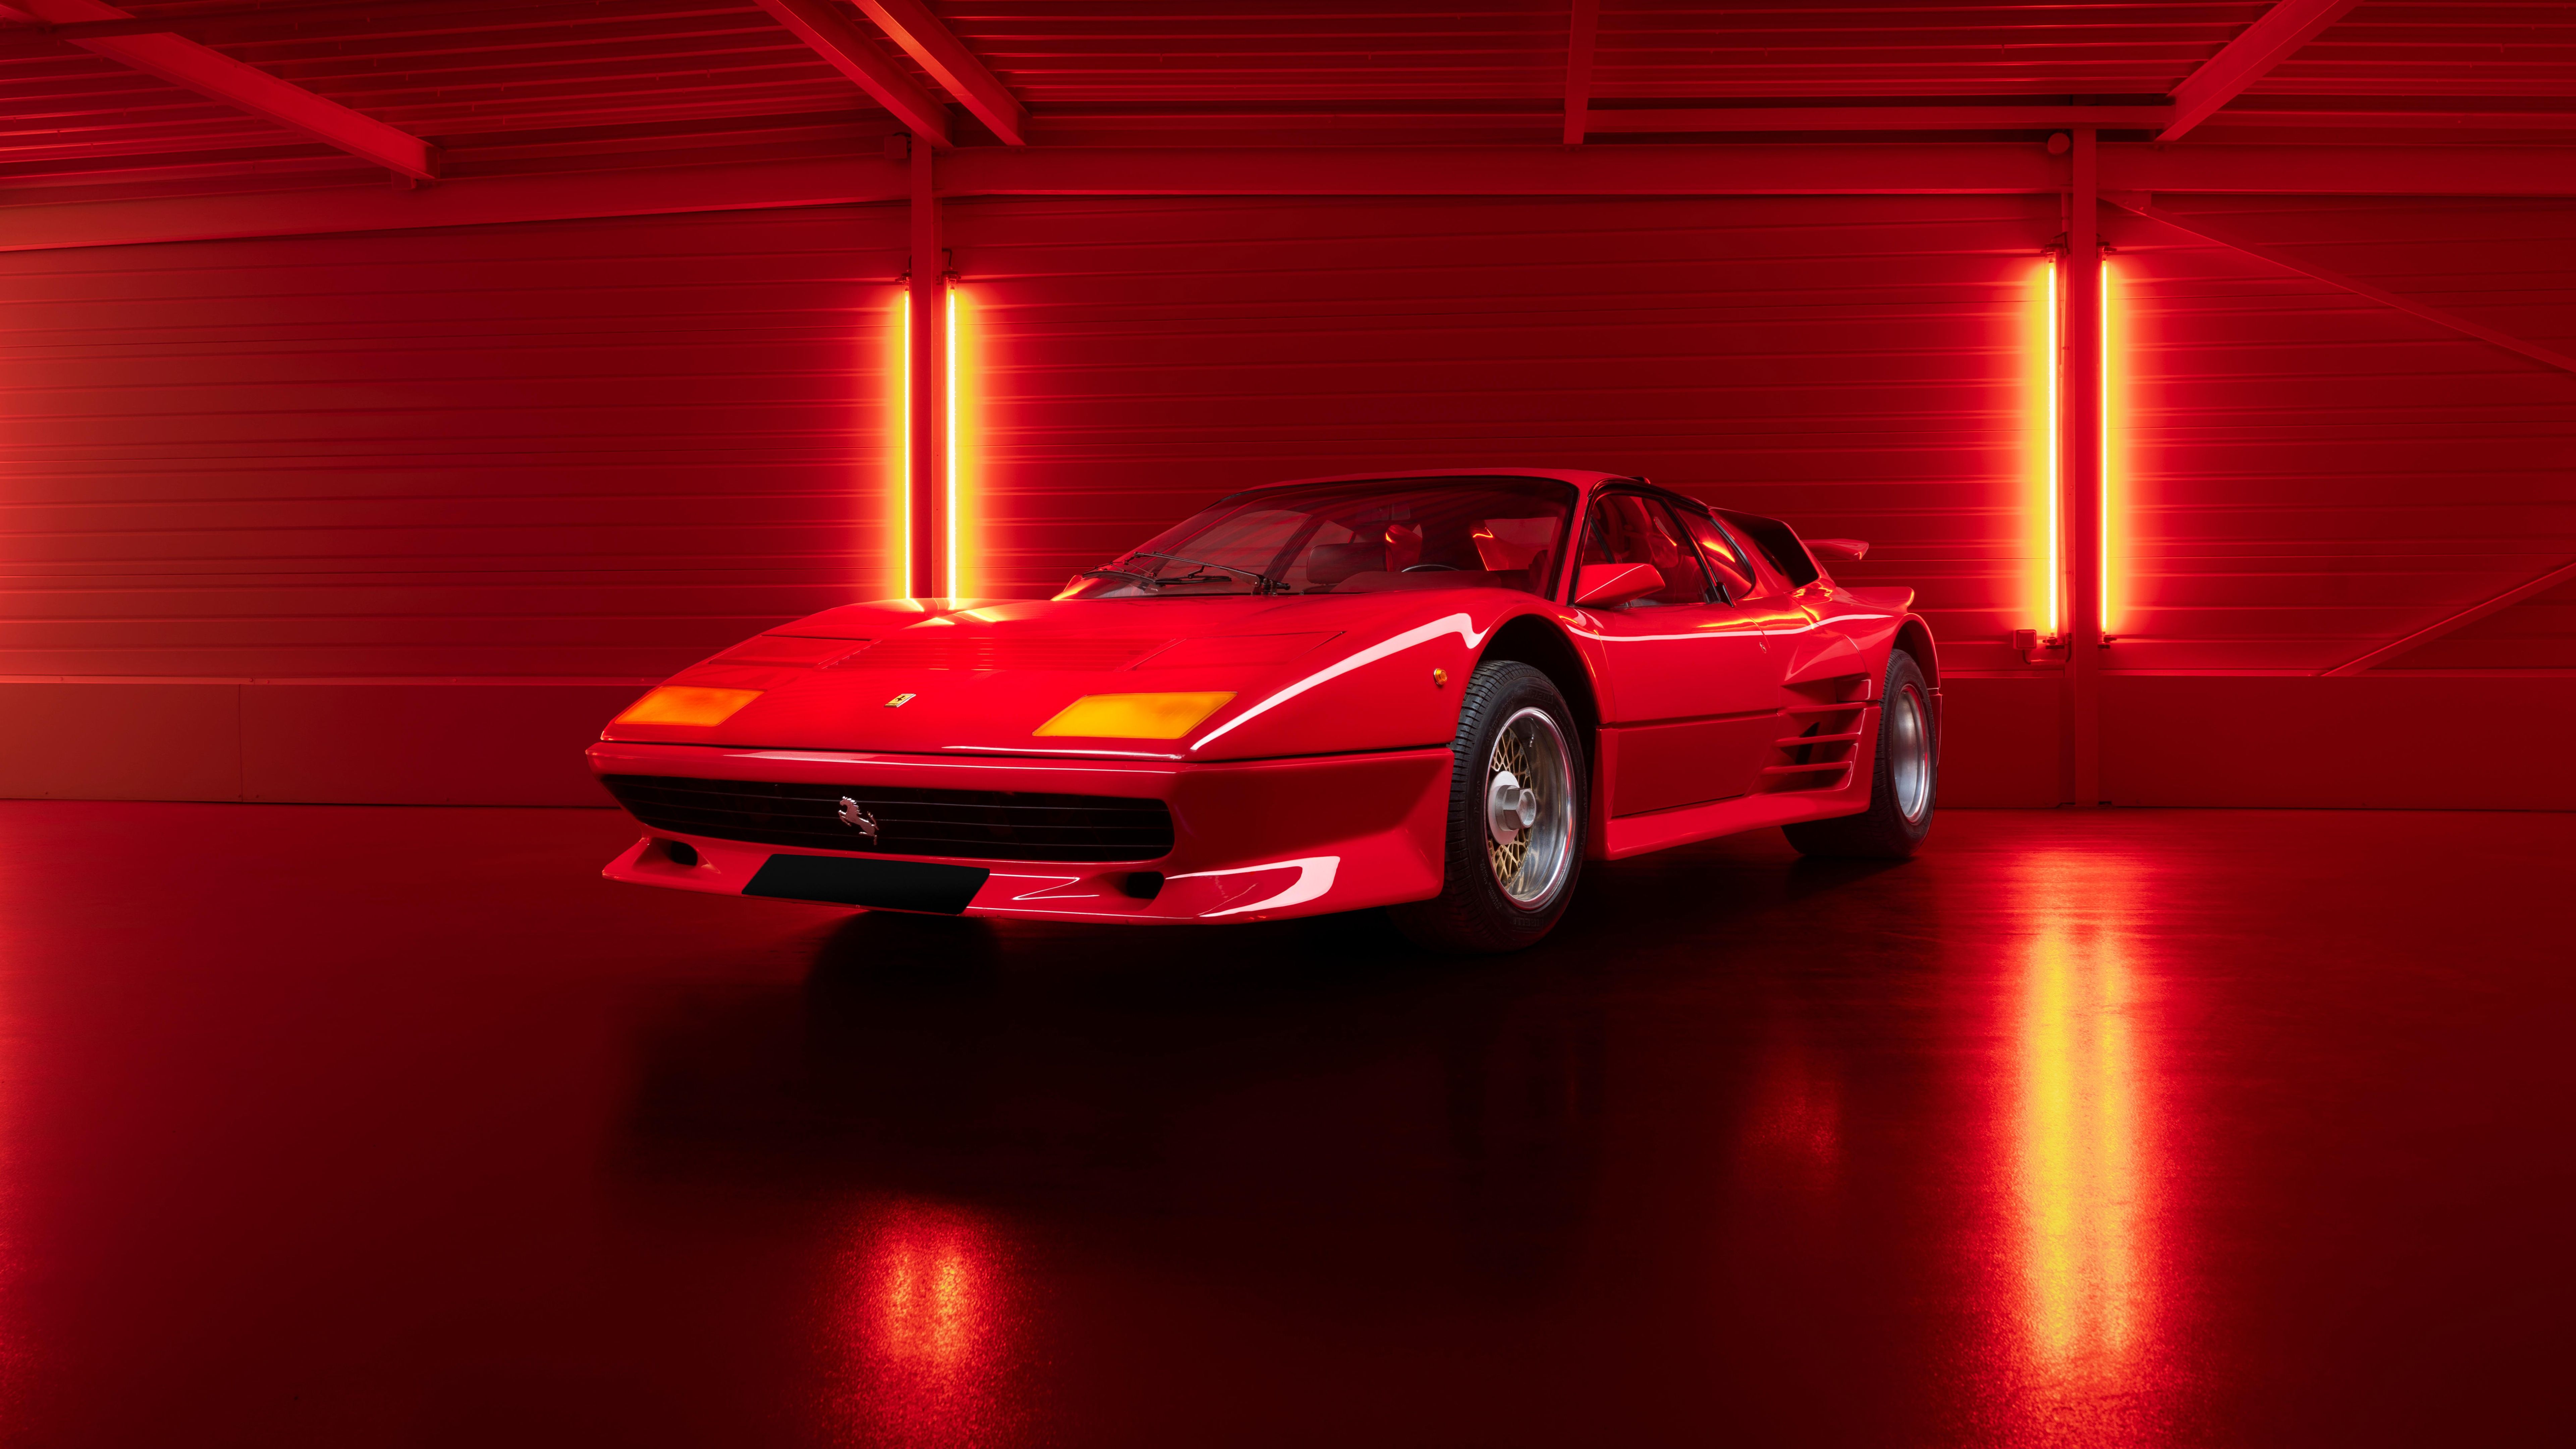 Ferrari Hintergrundbild 7680x4320. 4K Ferrari 512 Wallpaper and Background Image